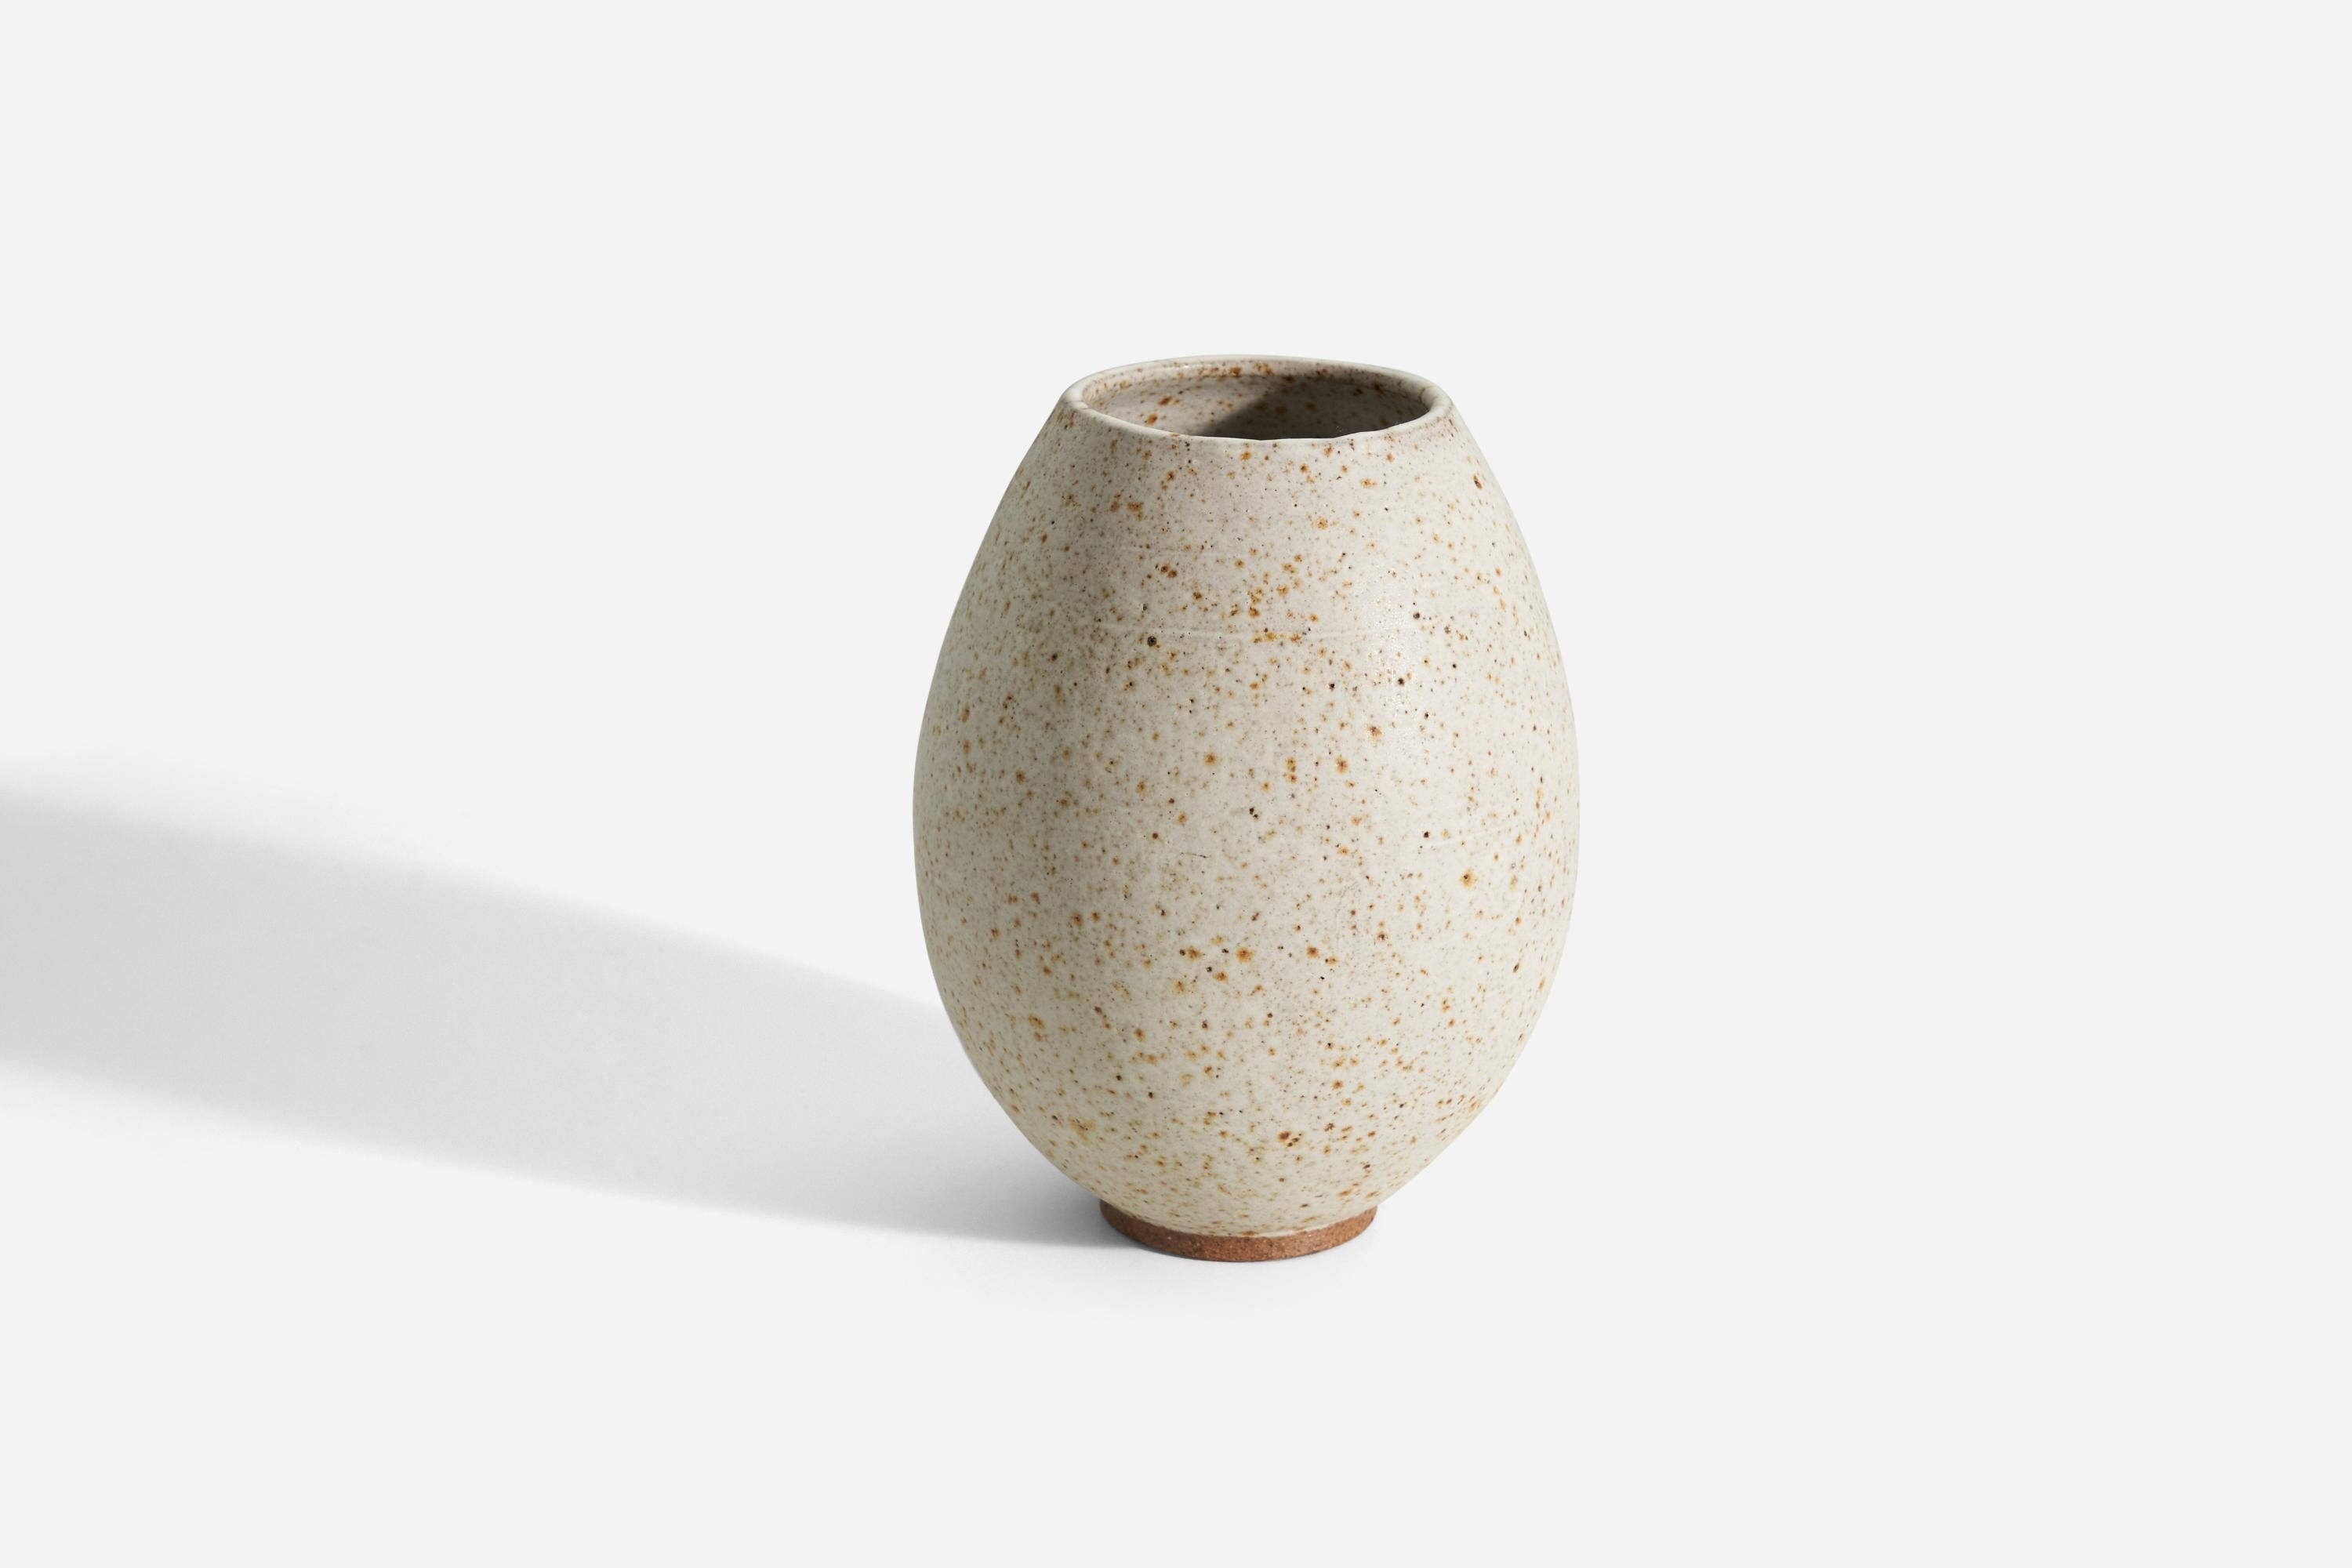 Un vase, en grès semi-glacé, conçu et produit par Kjell Boman, Lerhålan, Suède, vers les années 1960.